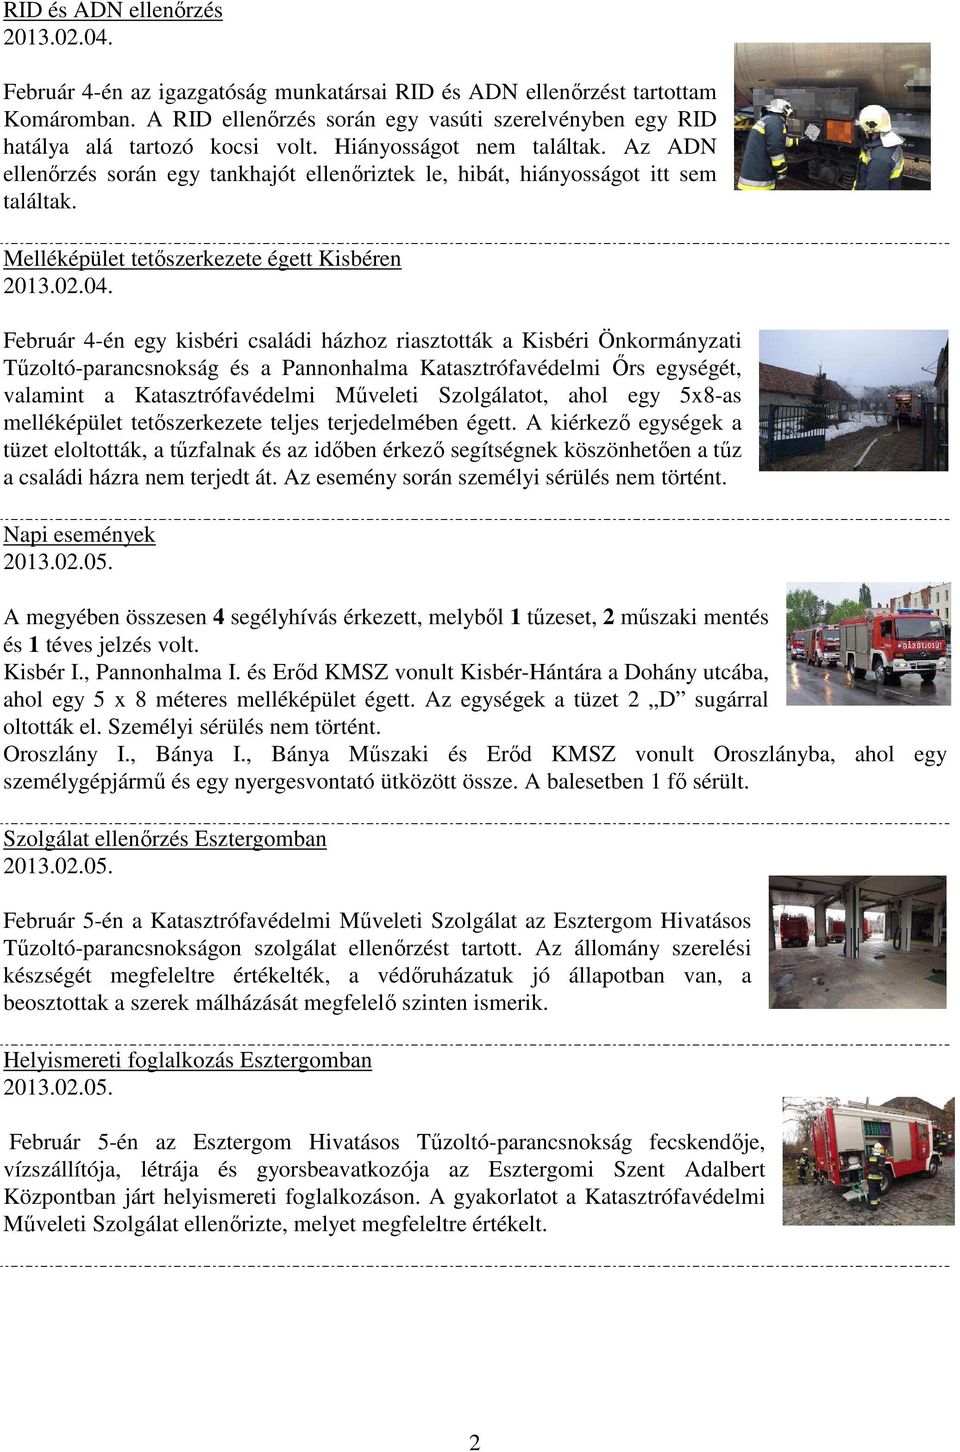 Melléképület tetőszerkezete égett Kisbéren Február 4-én egy kisbéri családi házhoz riasztották a Kisbéri Önkormányzati Tűzoltó-parancsnokság és a Pannonhalma Katasztrófavédelmi Őrs egységét, valamint